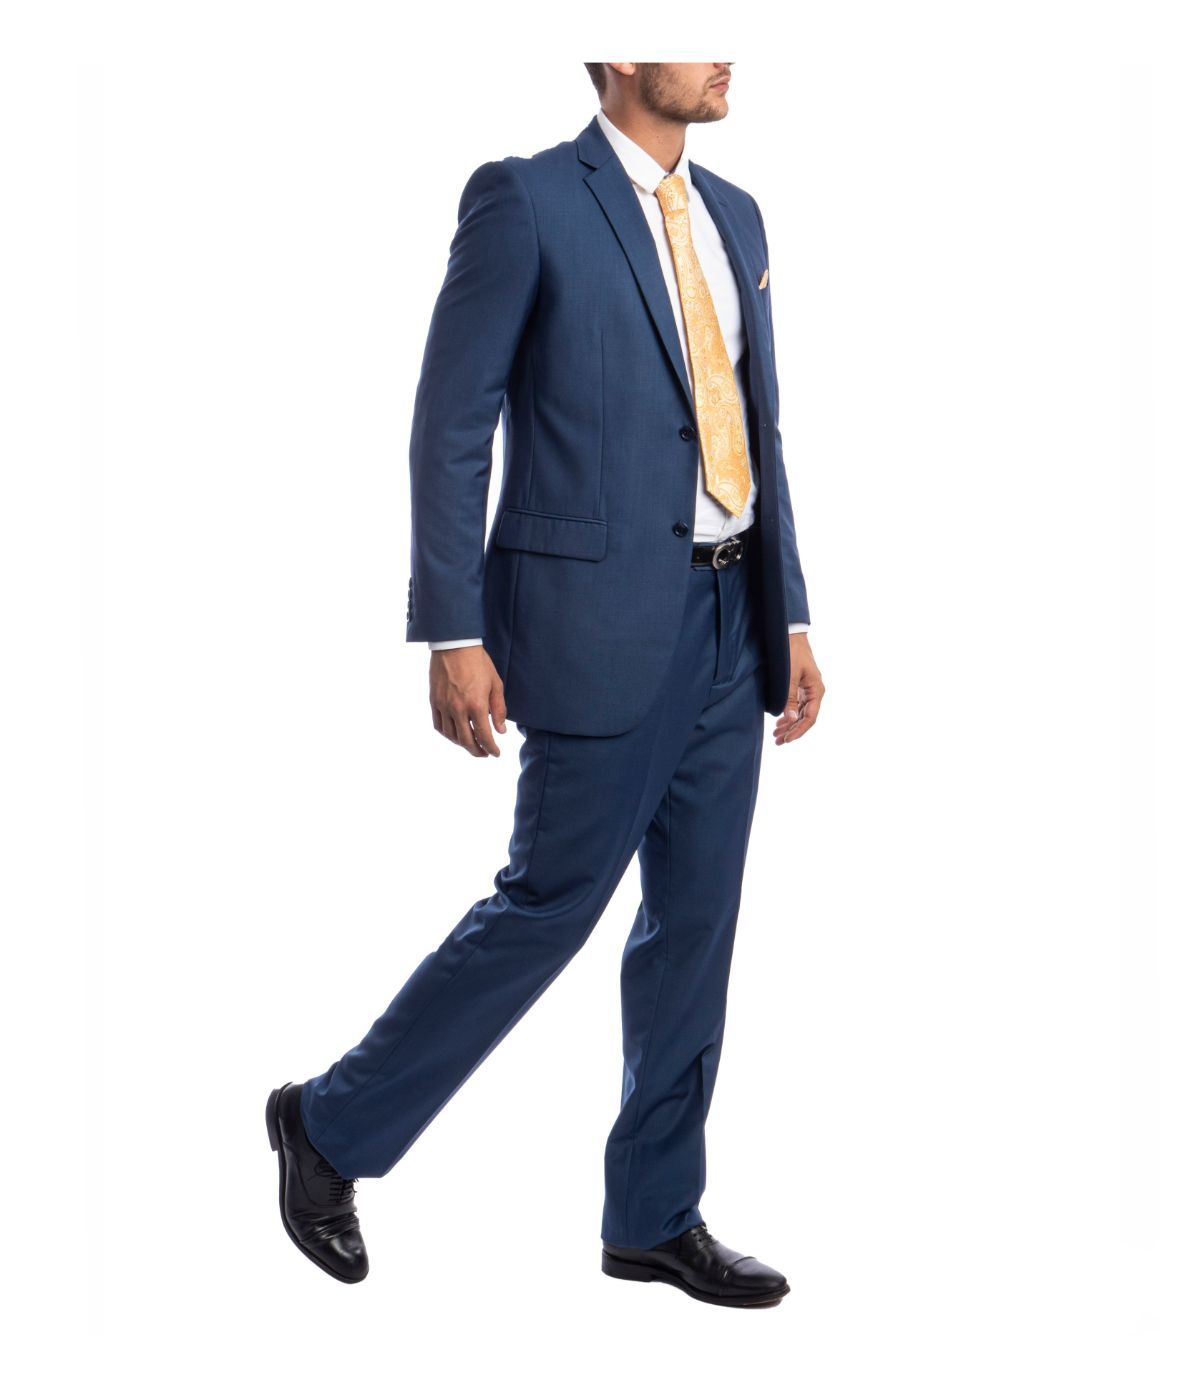 Men's Modern Fit Suits Two Piece Two Button Notch Lapel Suit Indigo Blue